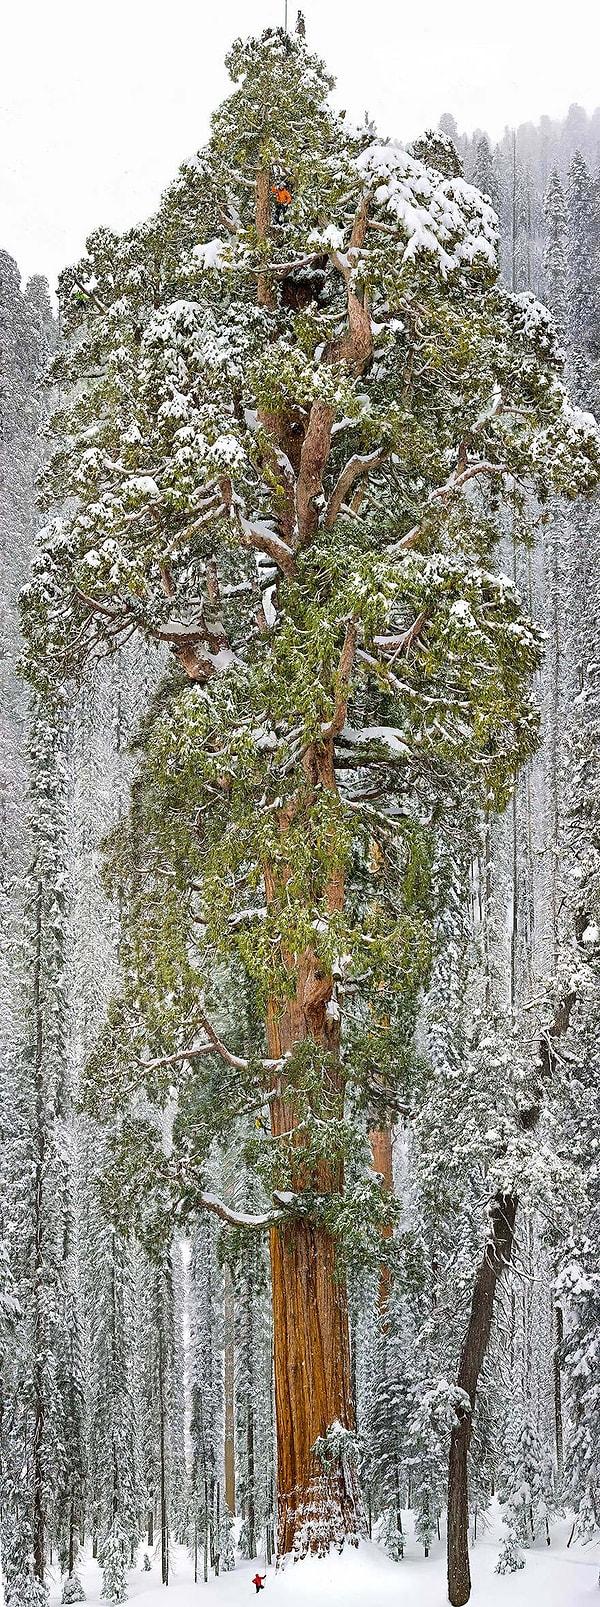 4. Dünya'nın en büyük 2. ağacı, California Sequoia Ulusal Parkı, ABD